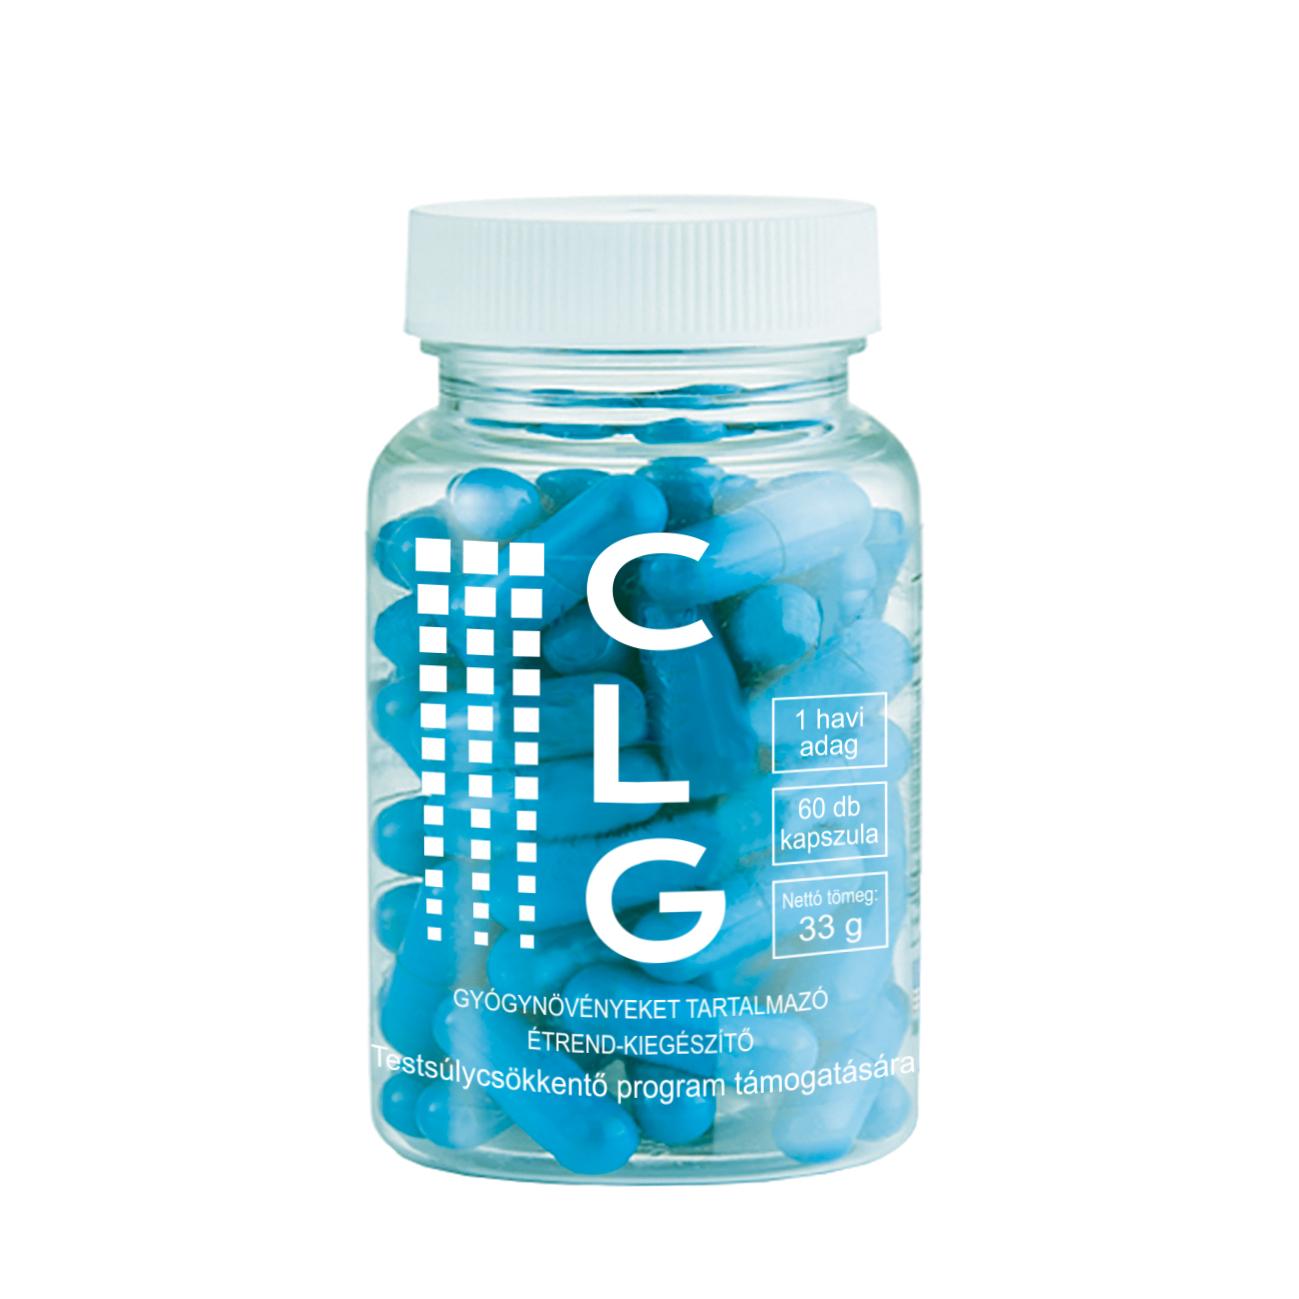 Clg gyógynövényeket tartalmazó étrend-kiegészítő kapszula 60 db